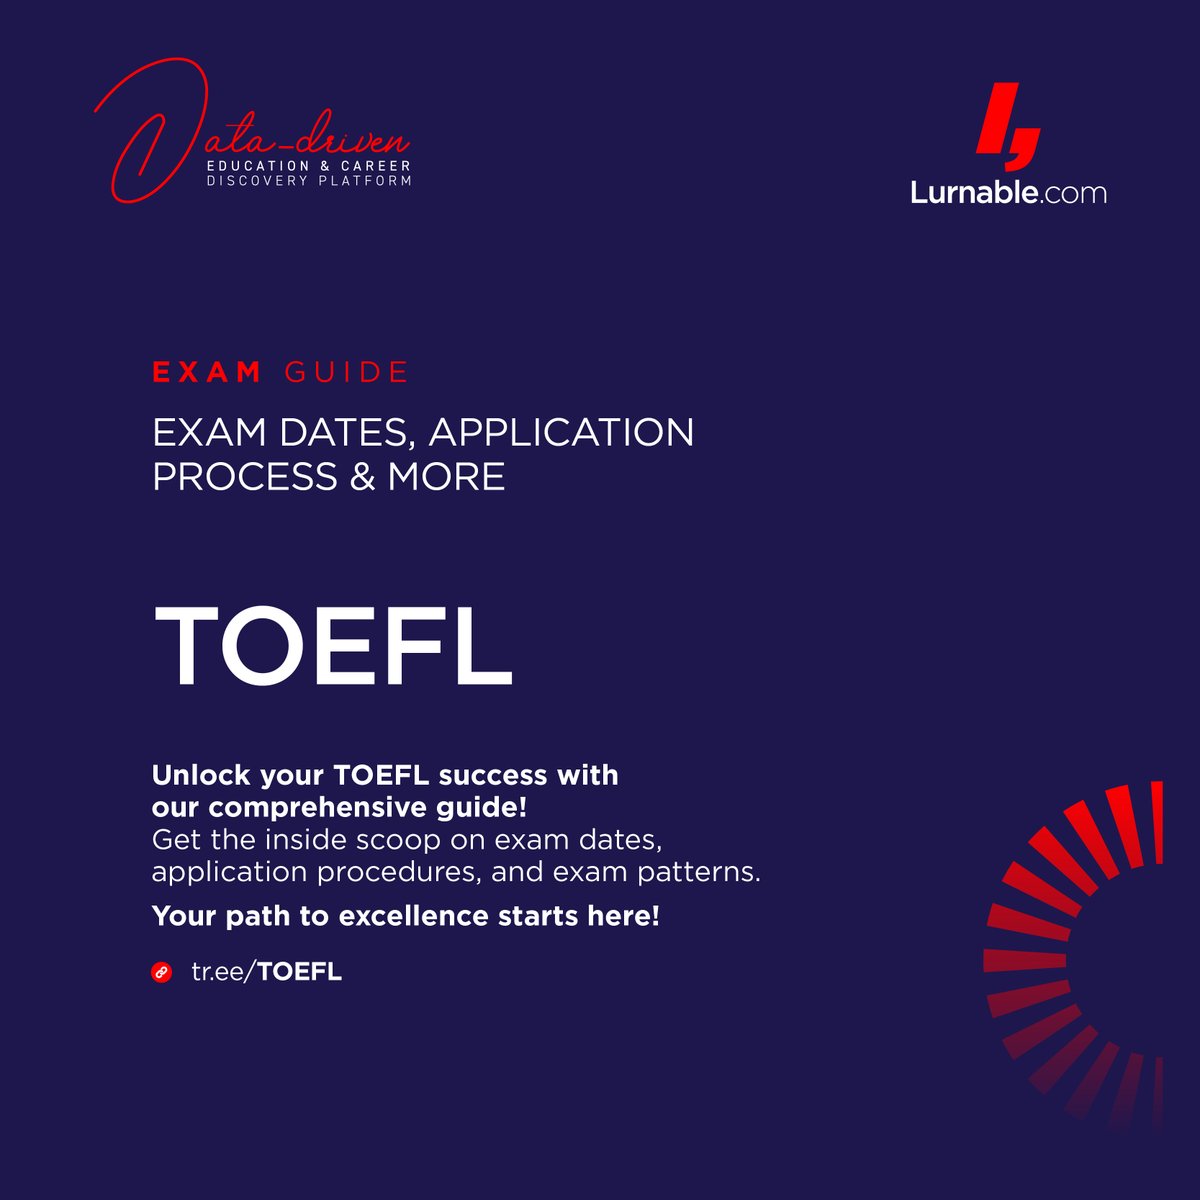 Unlock your TOEFL success with our comprehensive guide! tr.ee/TOEFL 

#toefl #toeflprep #toefltips #toeflspeaking #toeflwriting #toeflreading #toefllistening #toefltest #toeflpreparation